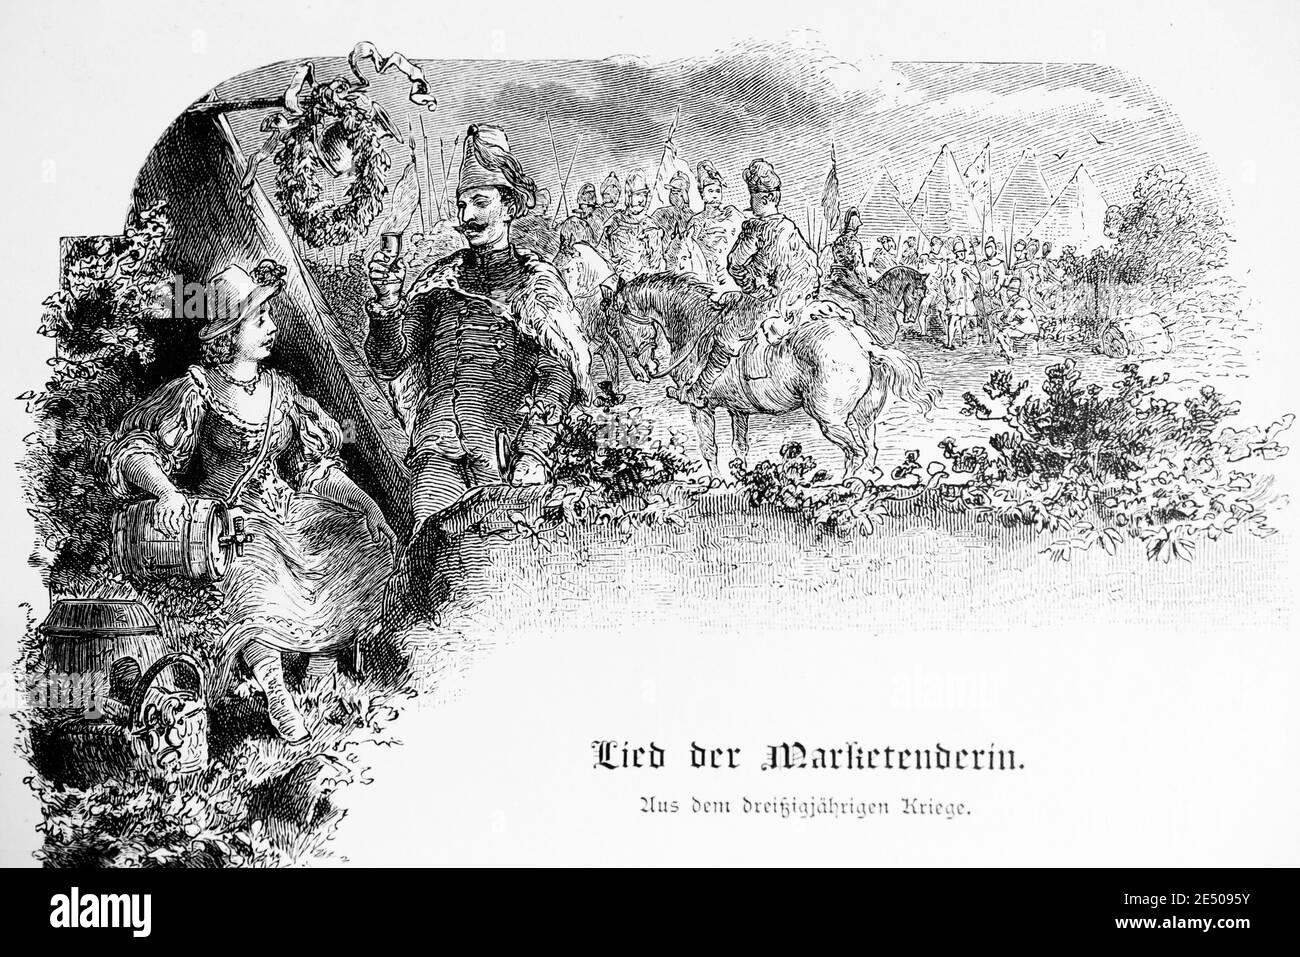 Illustrazione di Heine´s poema Lied der Marketenderin su un sutler e soldati, scrittore e poeta tedesco Heinrich Heine, collezione di poemi Romancero,1880 Foto Stock